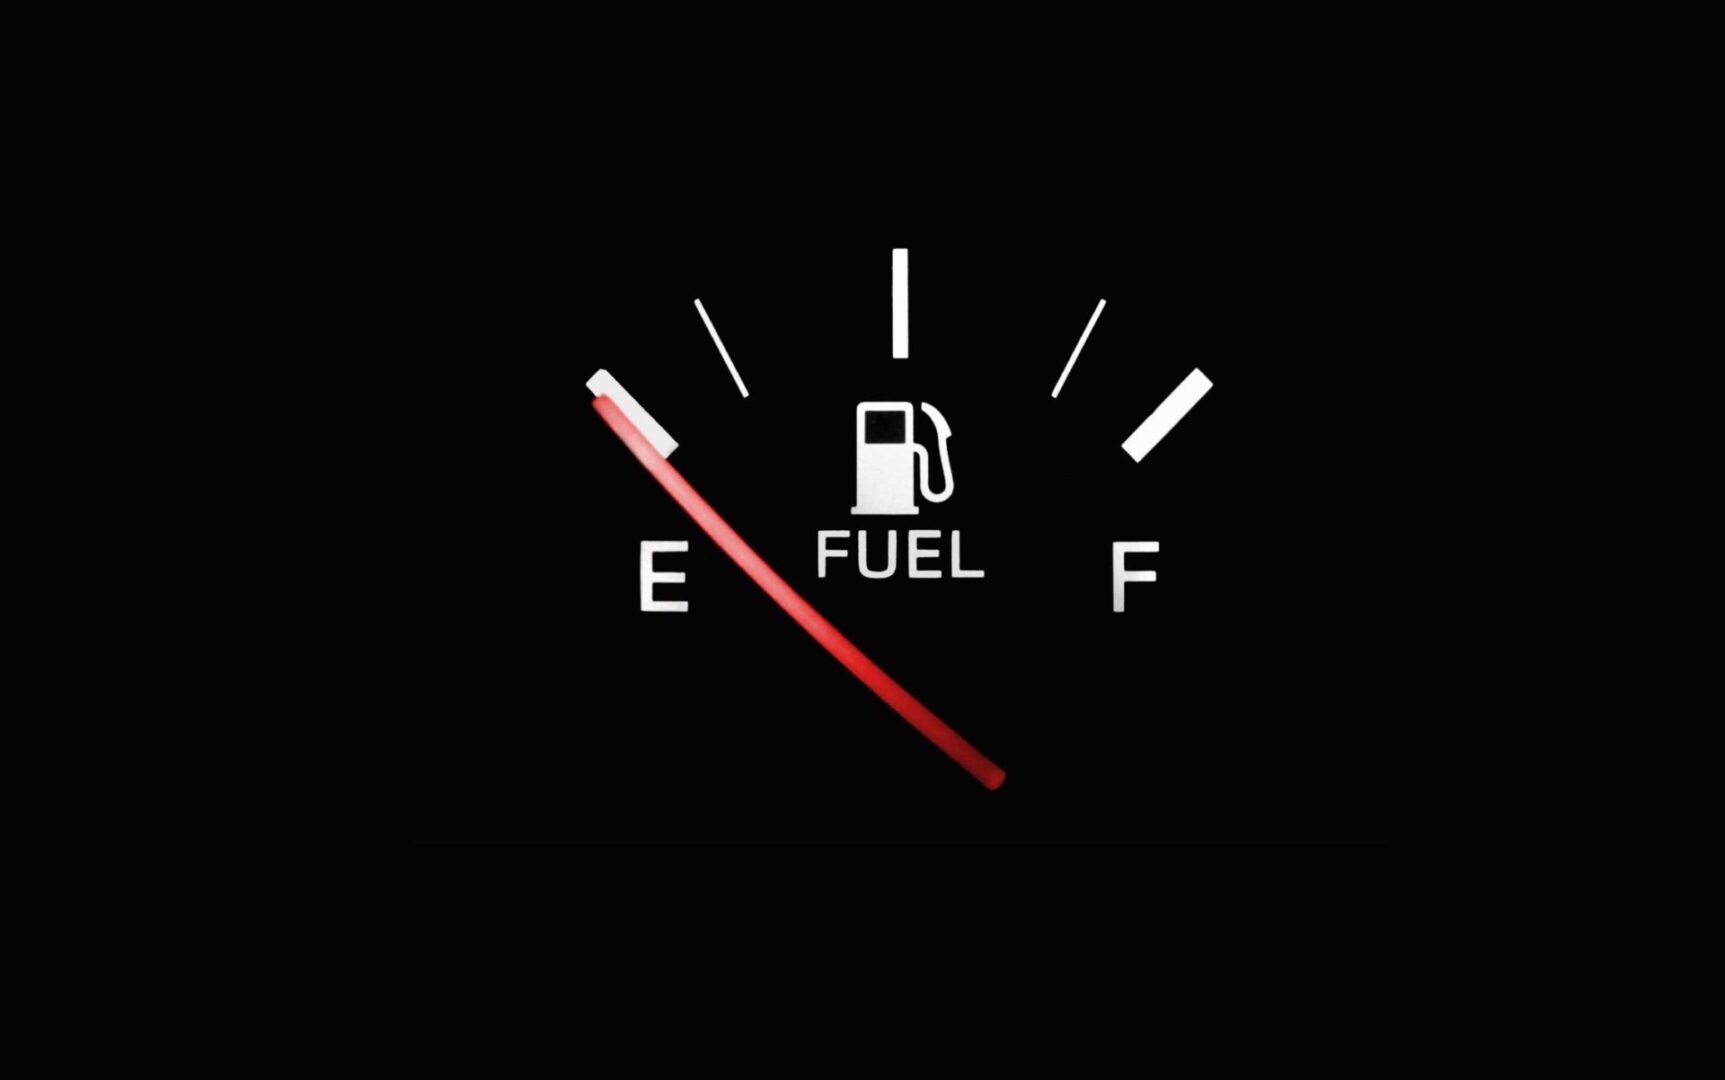 دراسة: صرفية الوقود في السيارات غير دقيقة